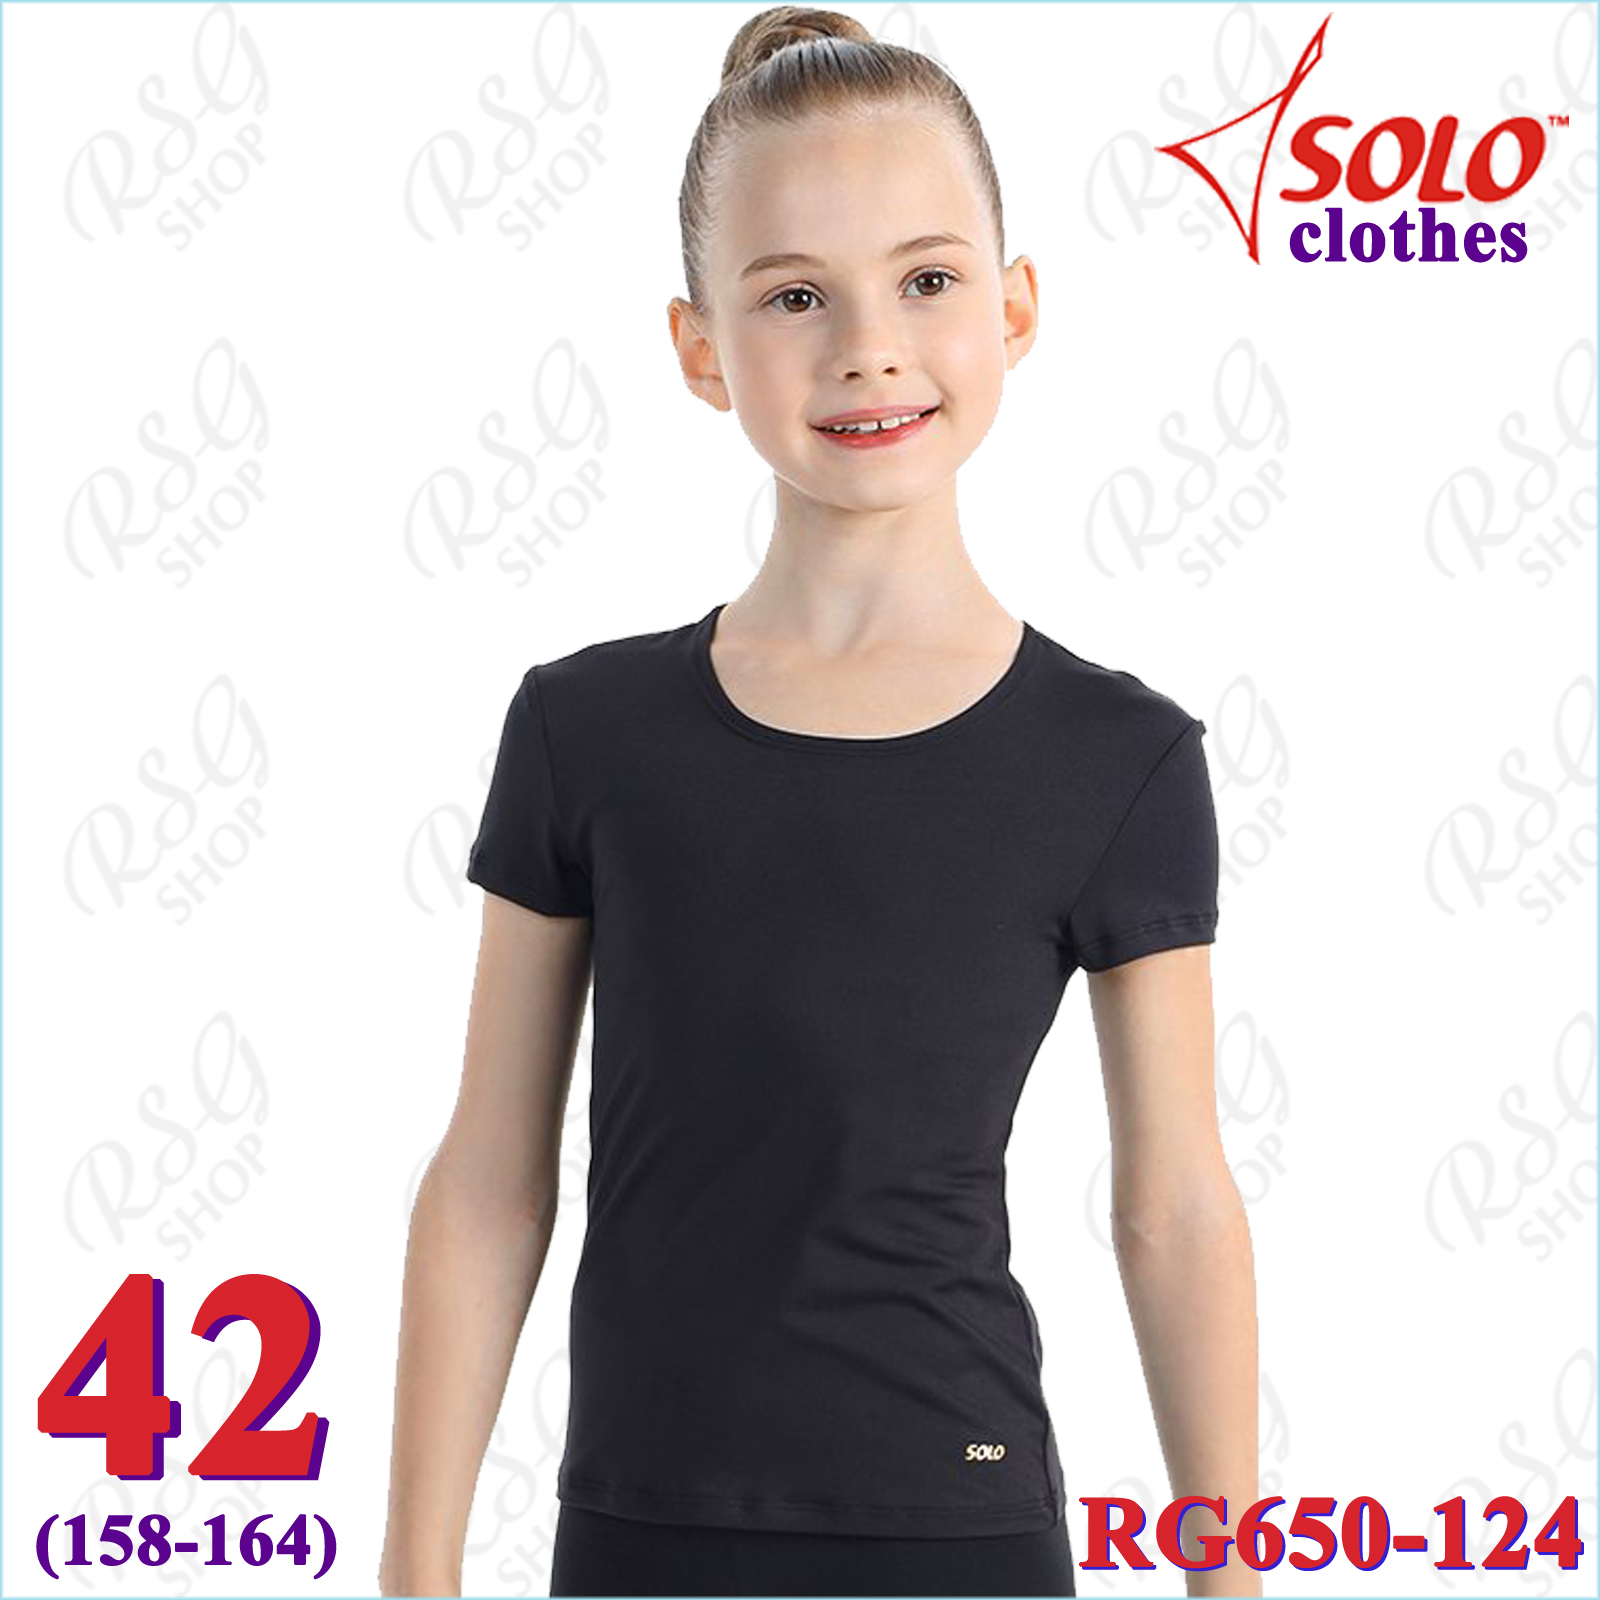 T-Shirt Solo s. 42 (158-164) col. Black Art. RG650-124-42